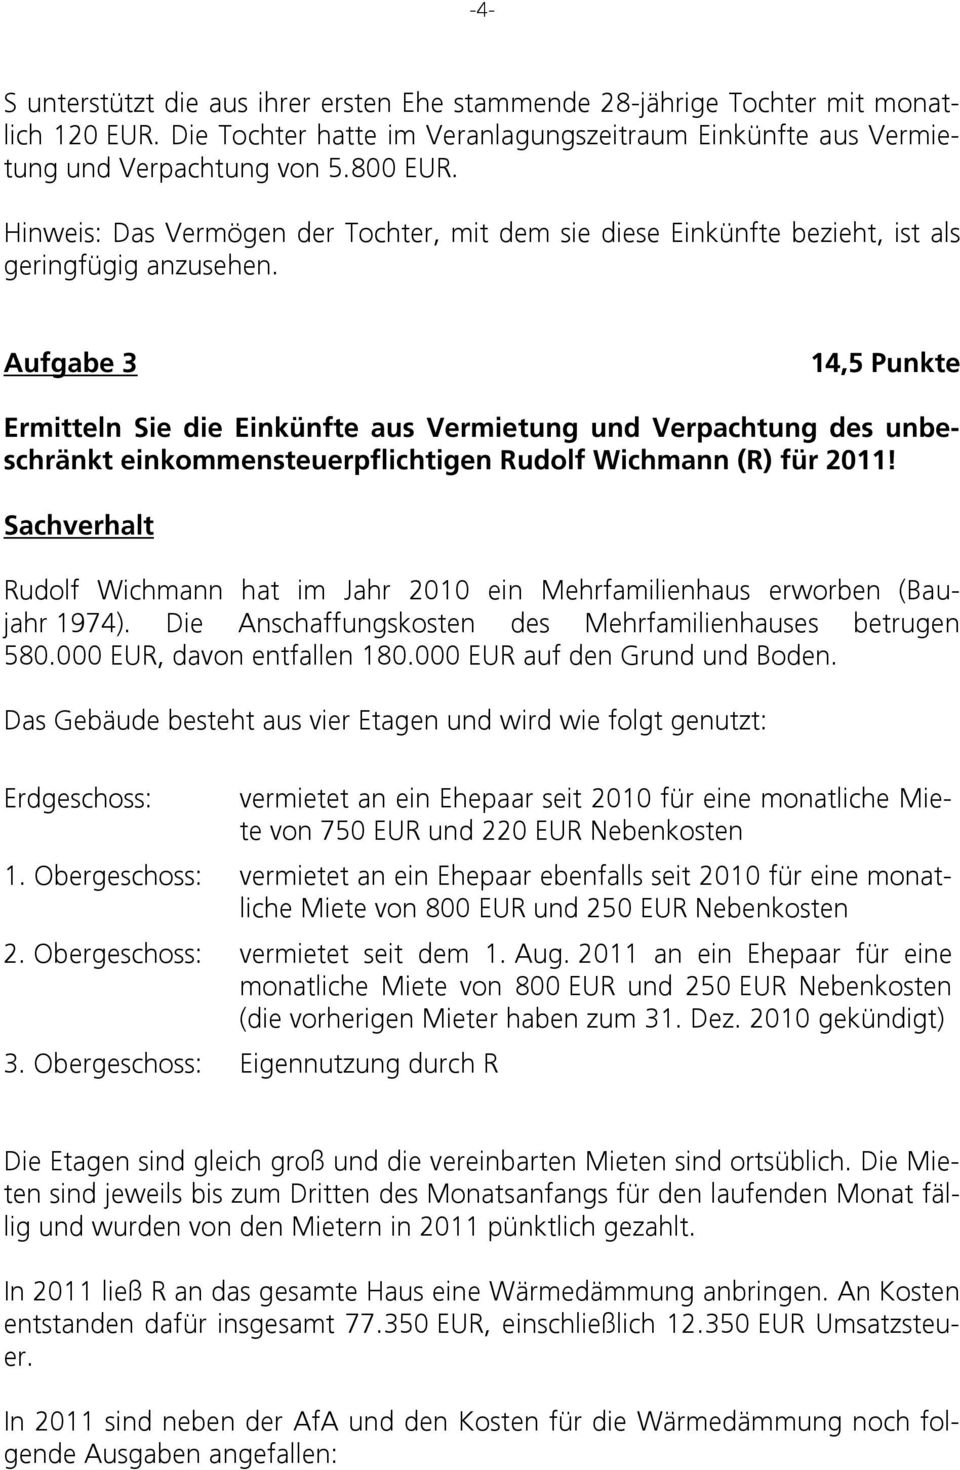 Aufgabe 3 14,5 Punkte Ermitteln Sie die Einkünfte aus Vermietung und Verpachtung des unbeschränkt einkommensteuerpflichtigen Rudolf Wichmann (R) für 2011!